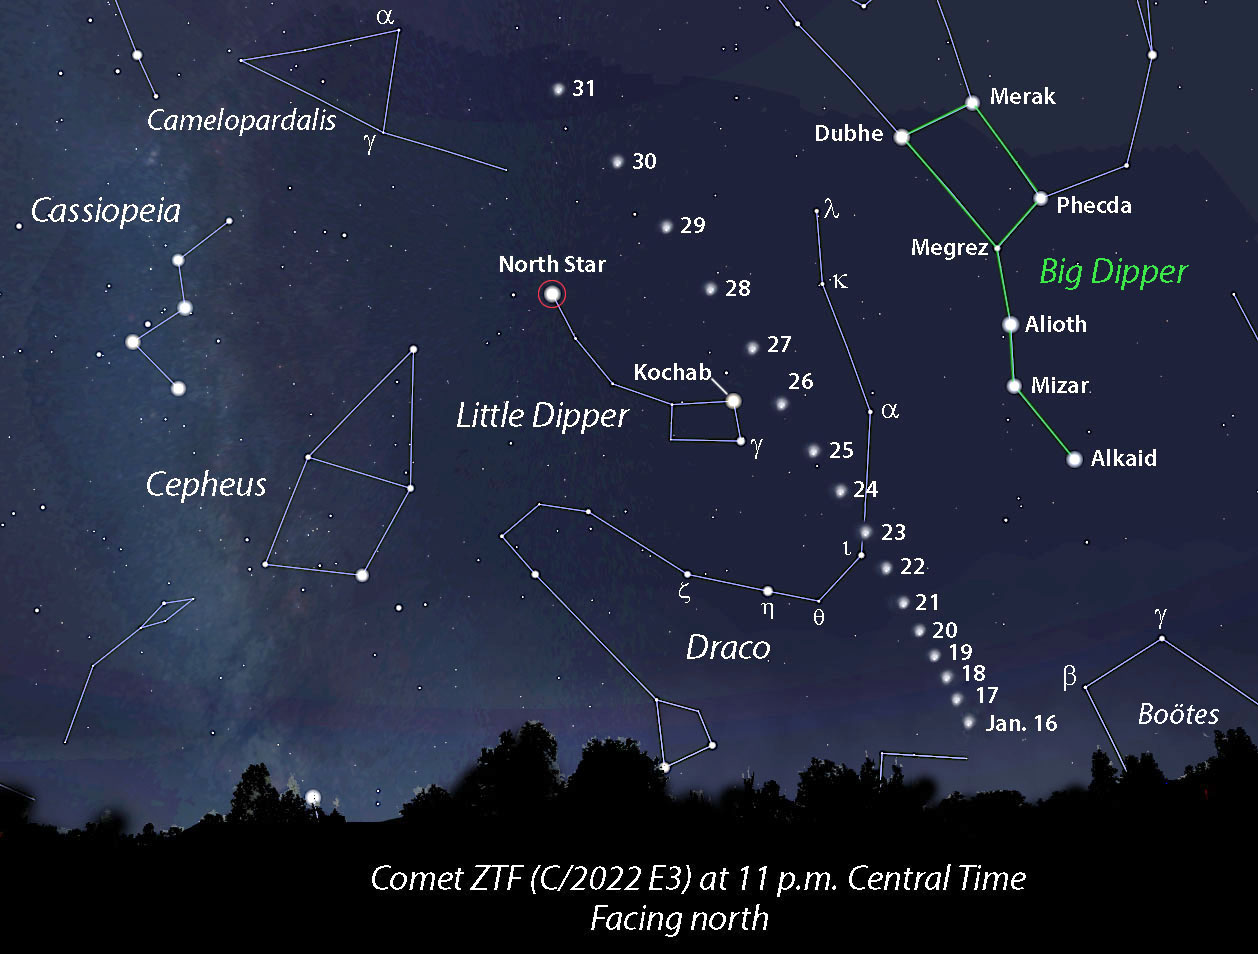 Cometa_ZTF-E3_percorso_S&T_24-31_gennaio_Forum_ADIA_Astronomia.jpg